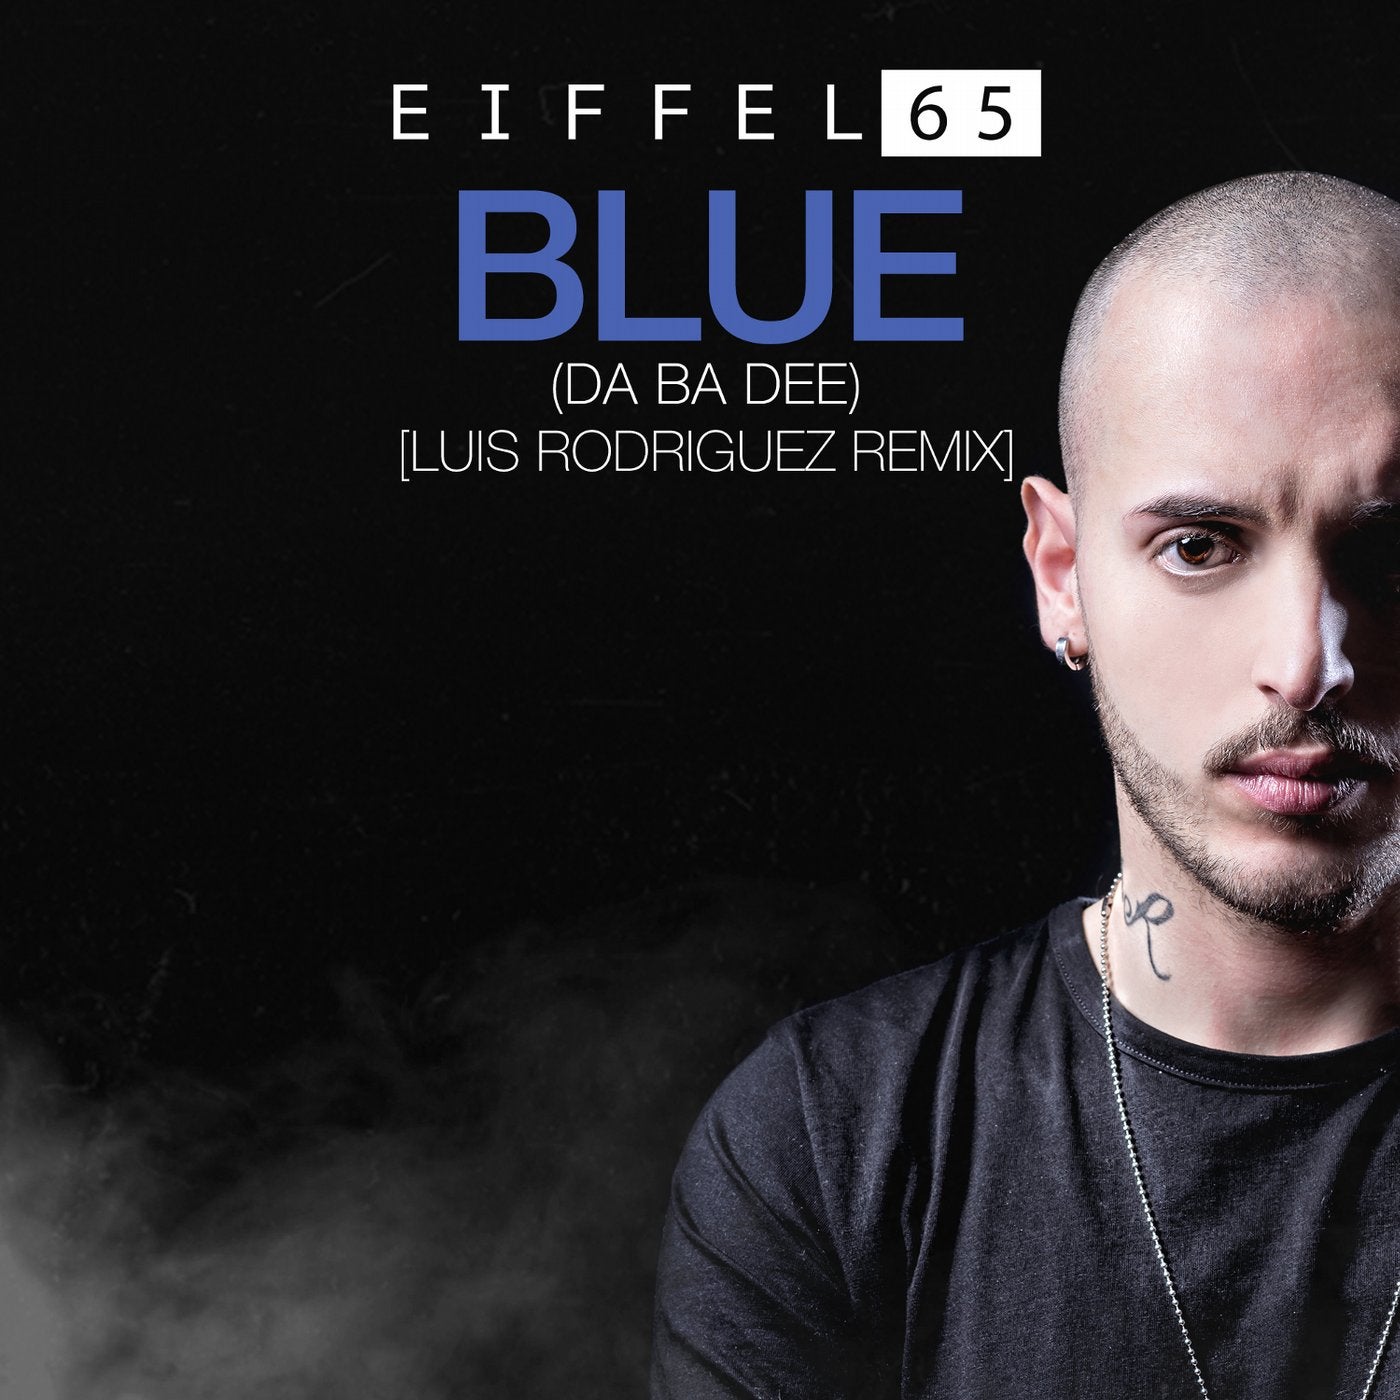 eiffel 65 blue release date